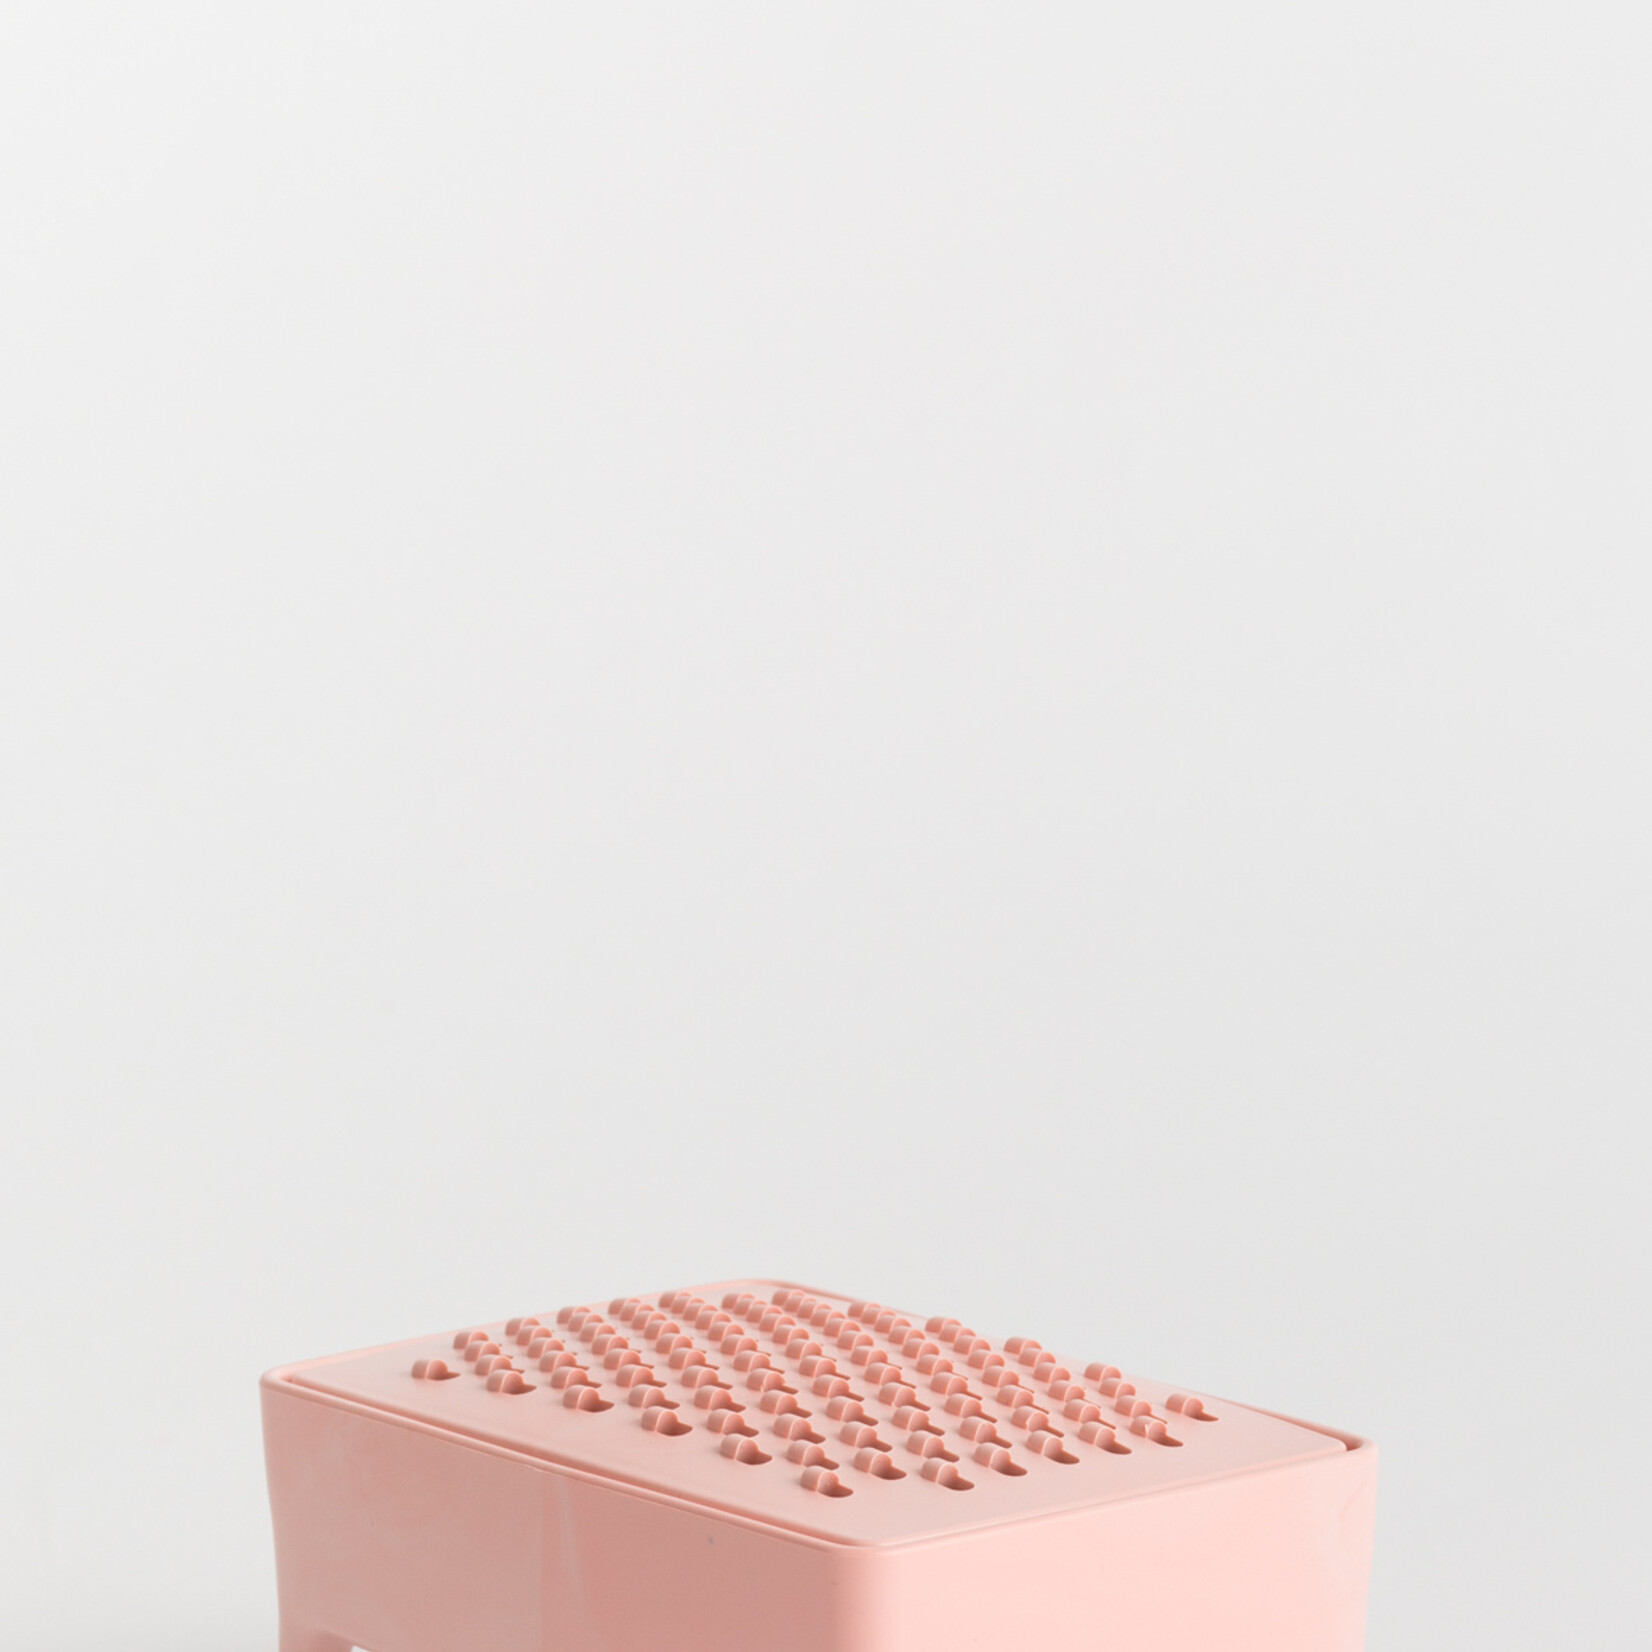 Foekje Fleur Foekje Fleur - Bubble Buddy kit Lemon soap - millenial pink